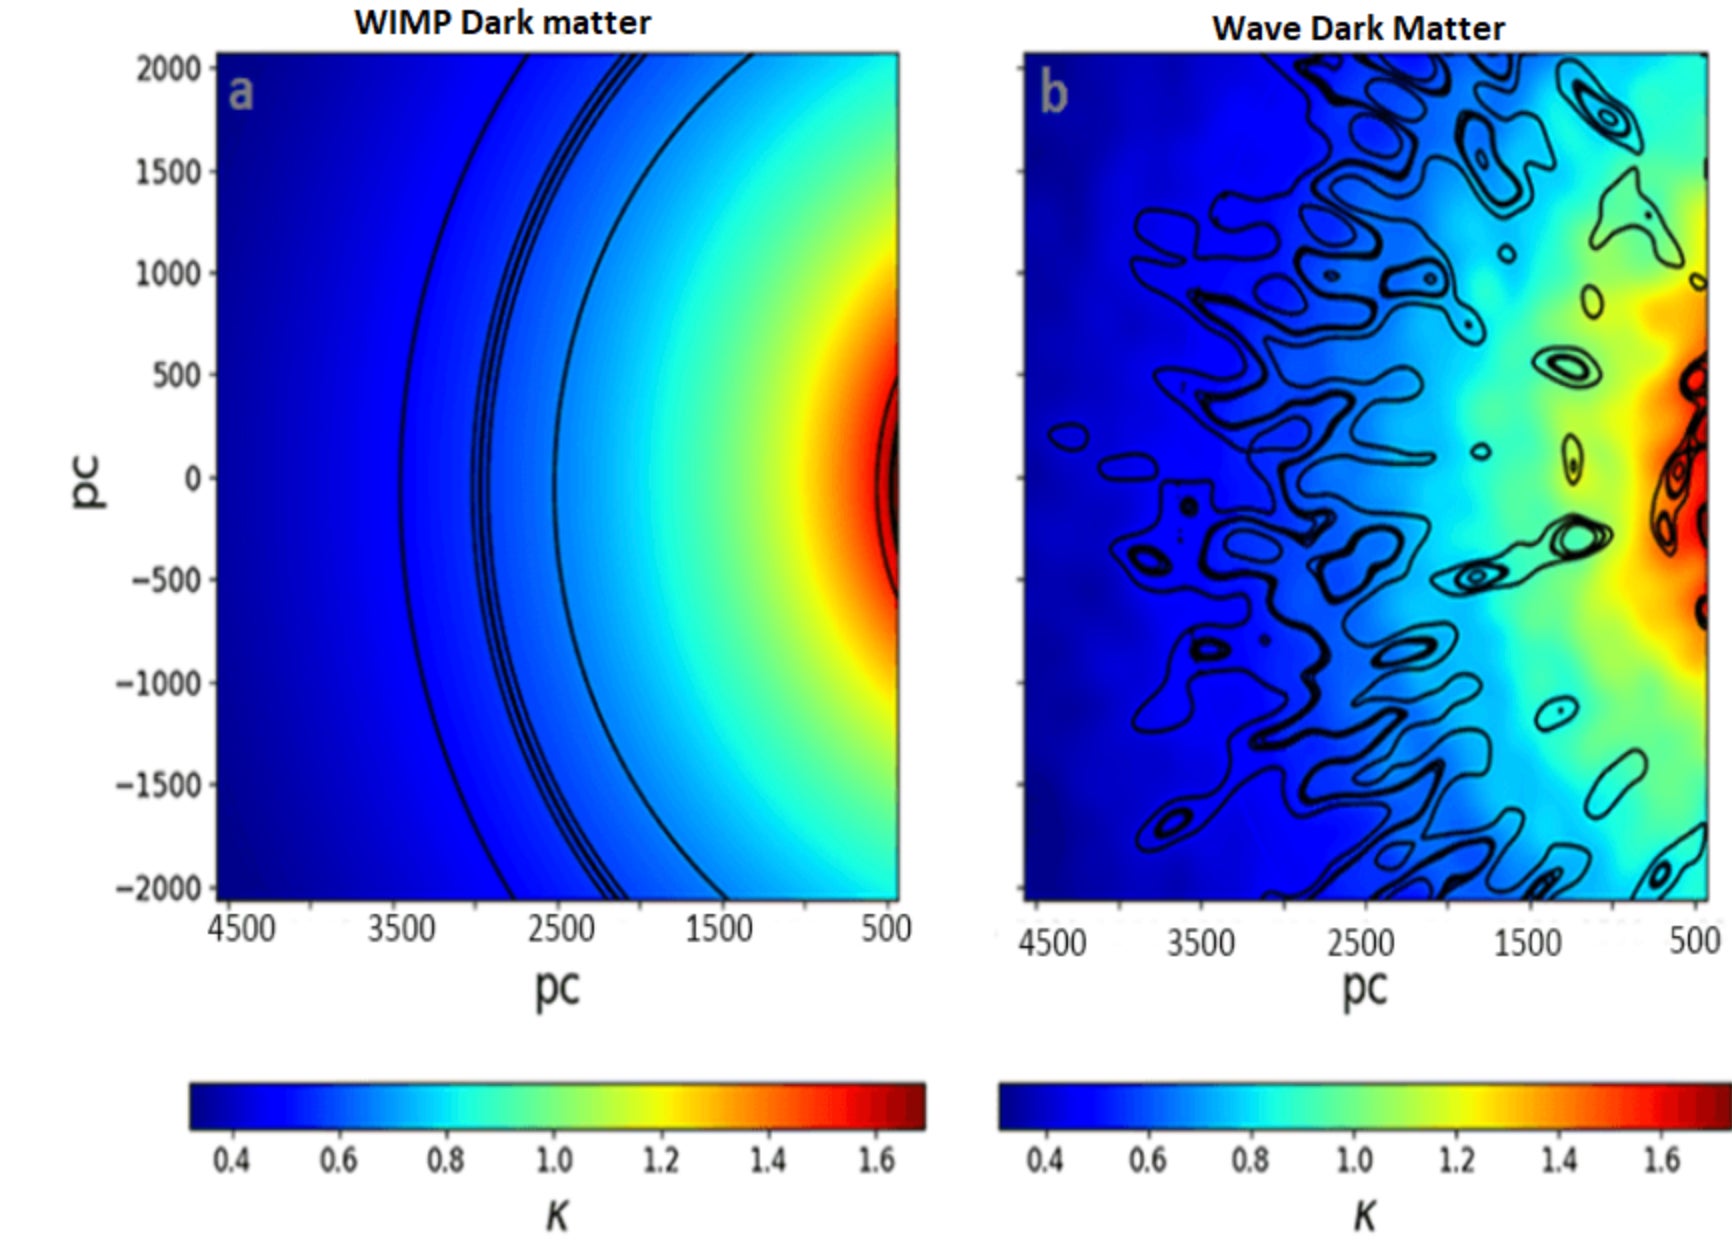 Bordas simuladas de anéis de Einstein em WIMP (à esquerda) e modelos de matéria escura em forma de onda (à direita).